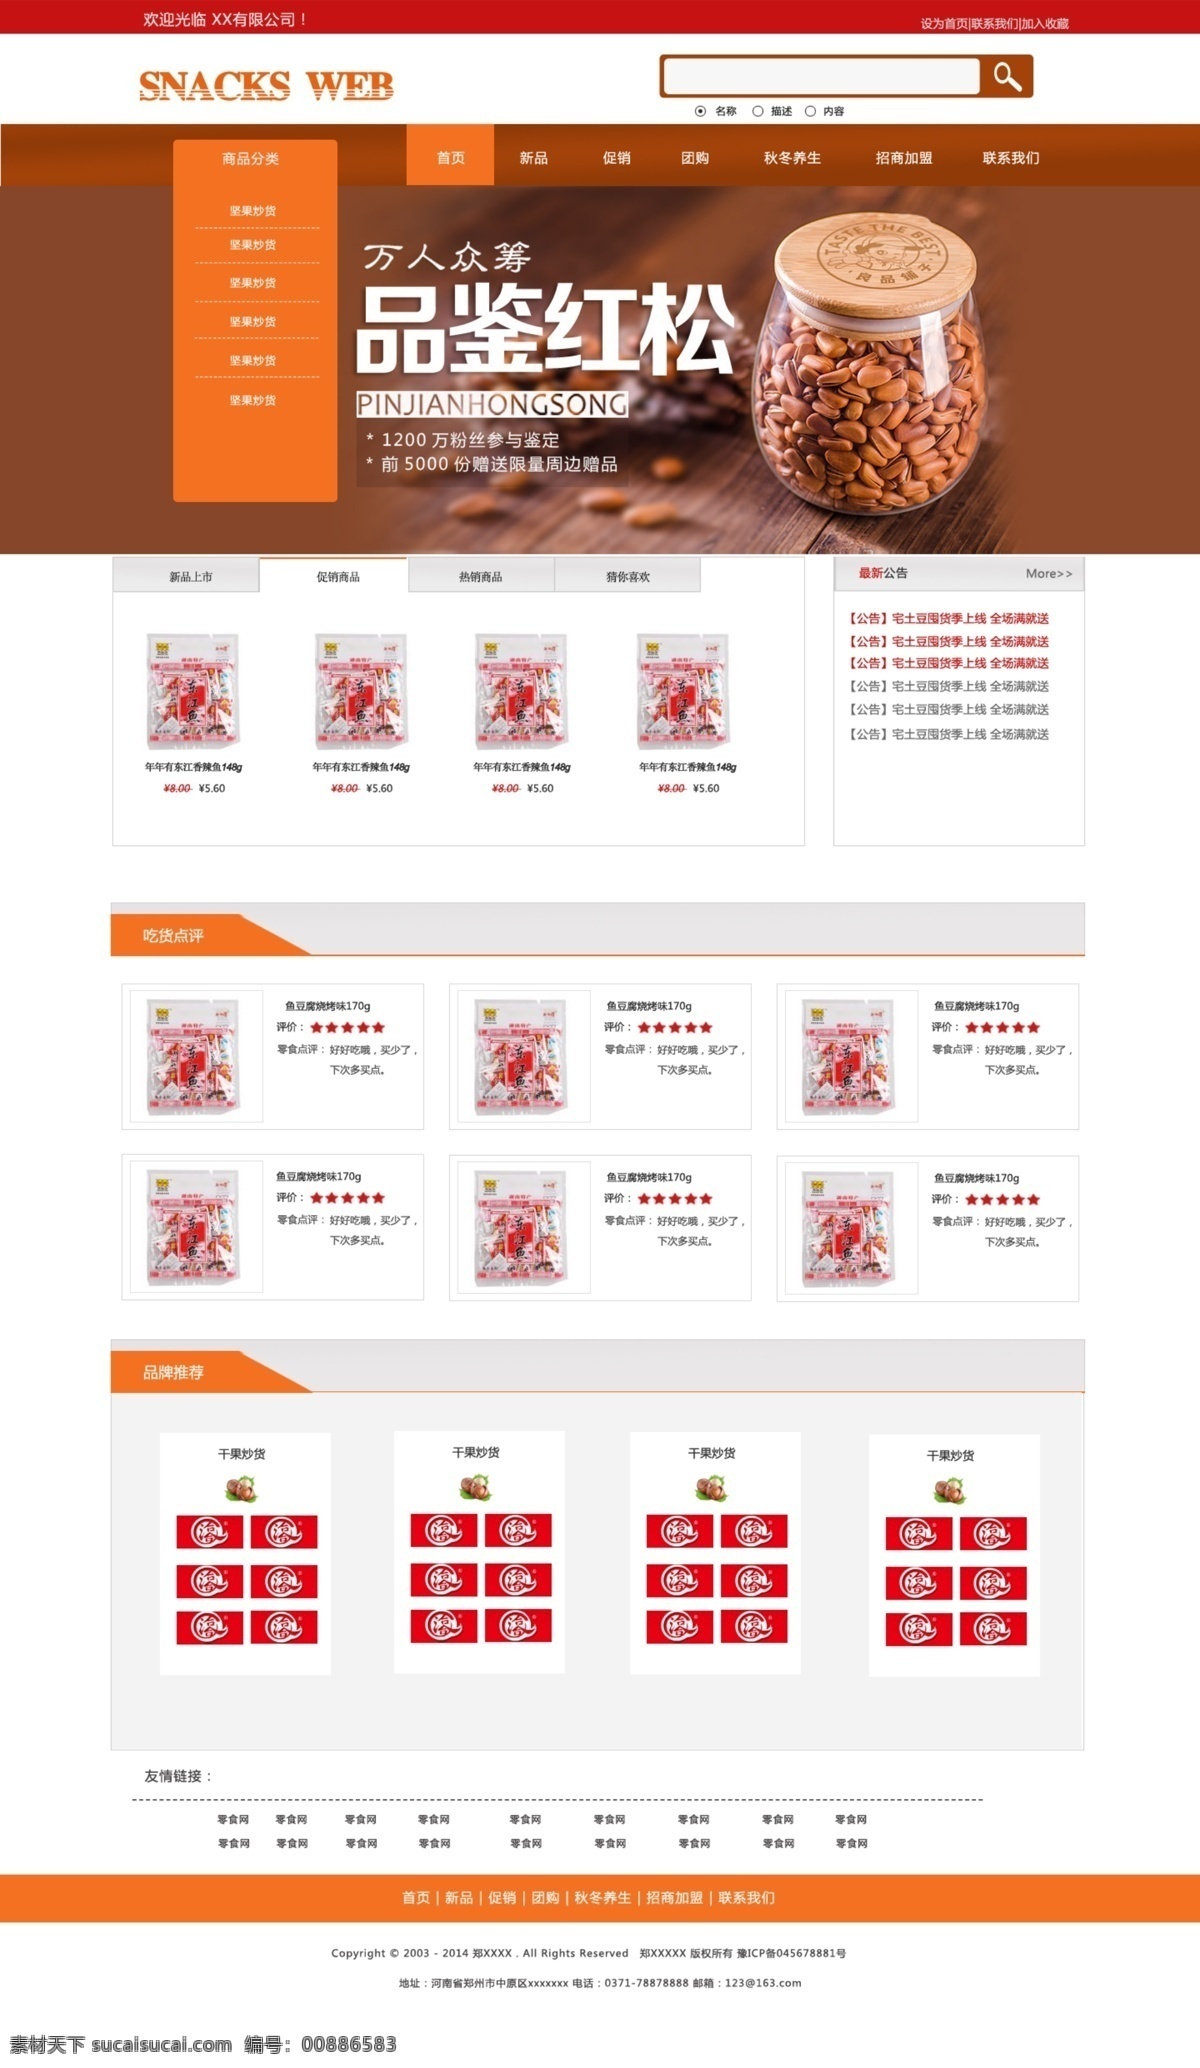 零食 网站 效果图 平面设计 网页设计 中文模板 web 界面设计 网页素材 其他网页素材